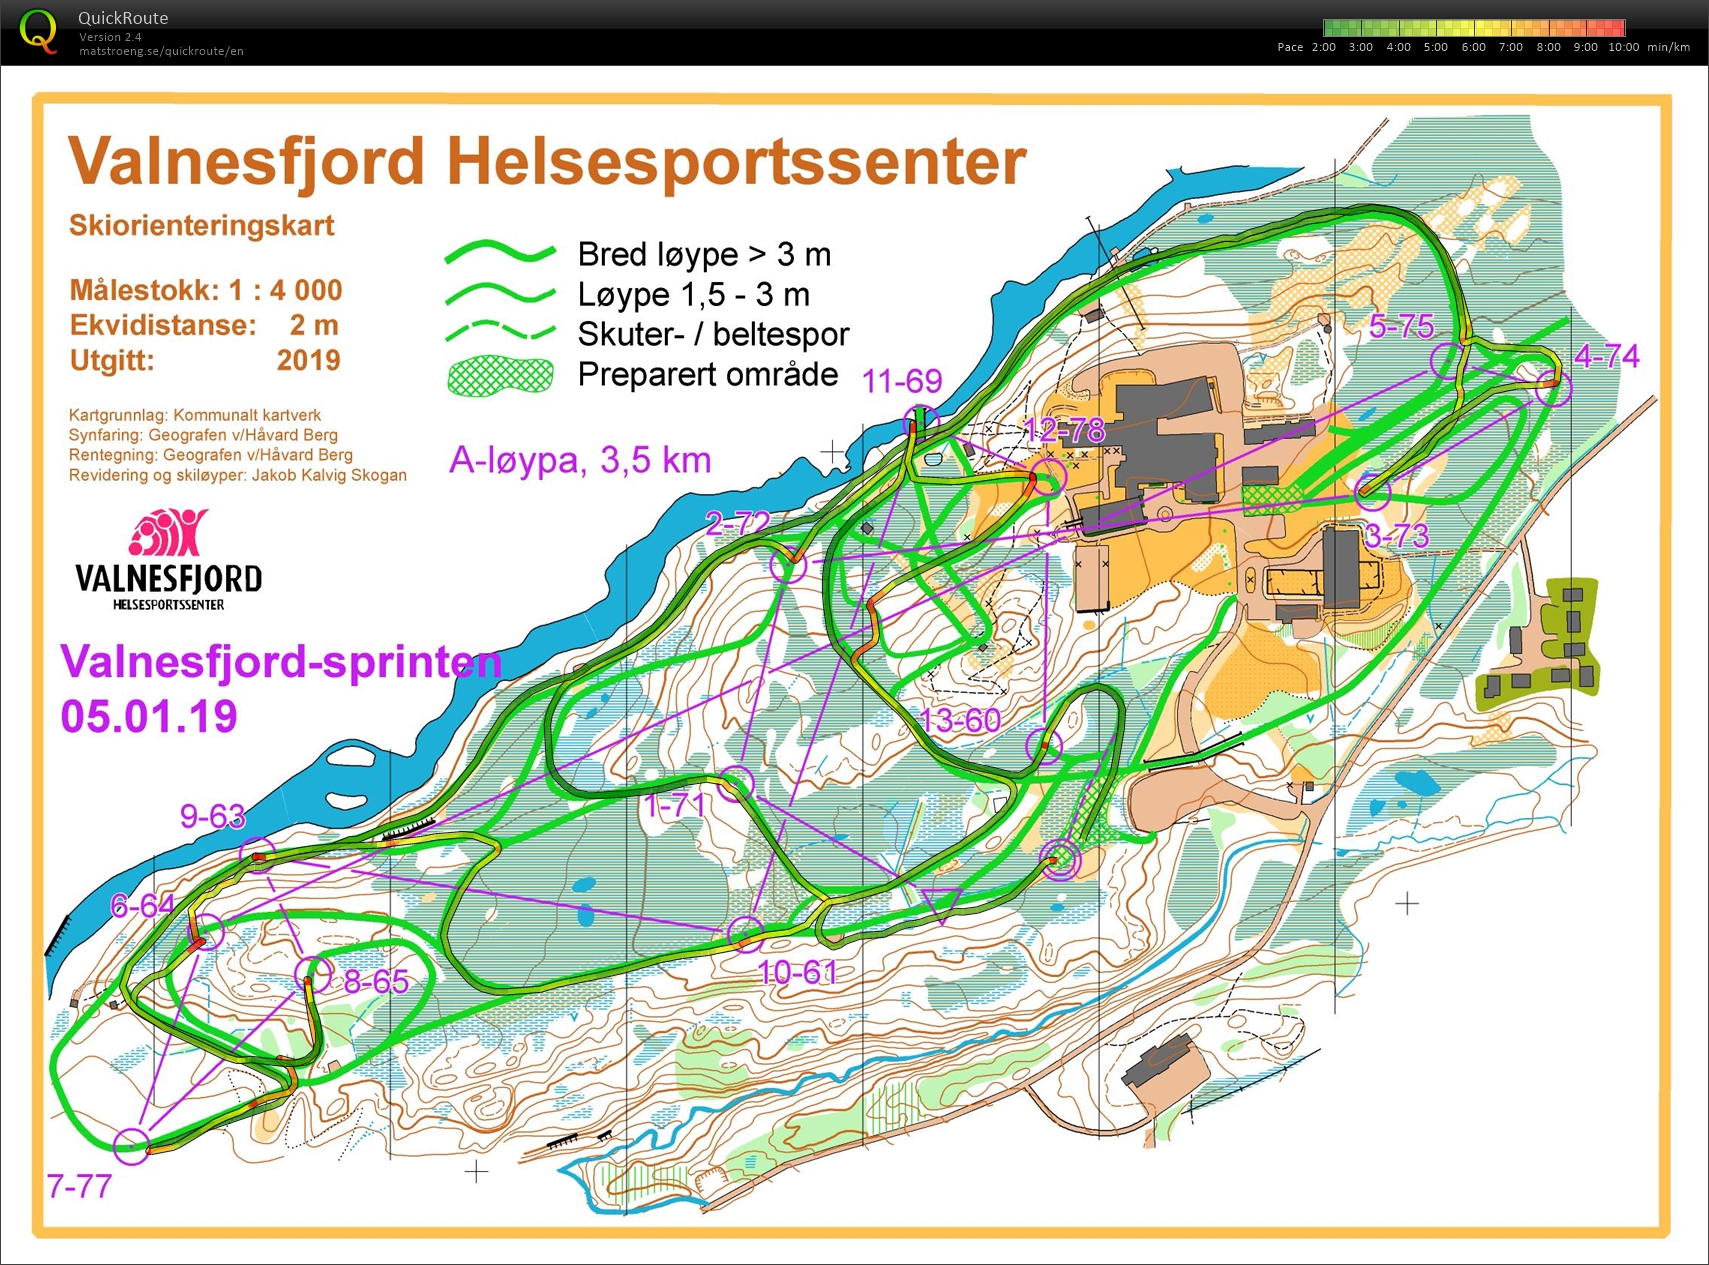 Valnesfjordsprinten Skiorientering (05/01/2020)